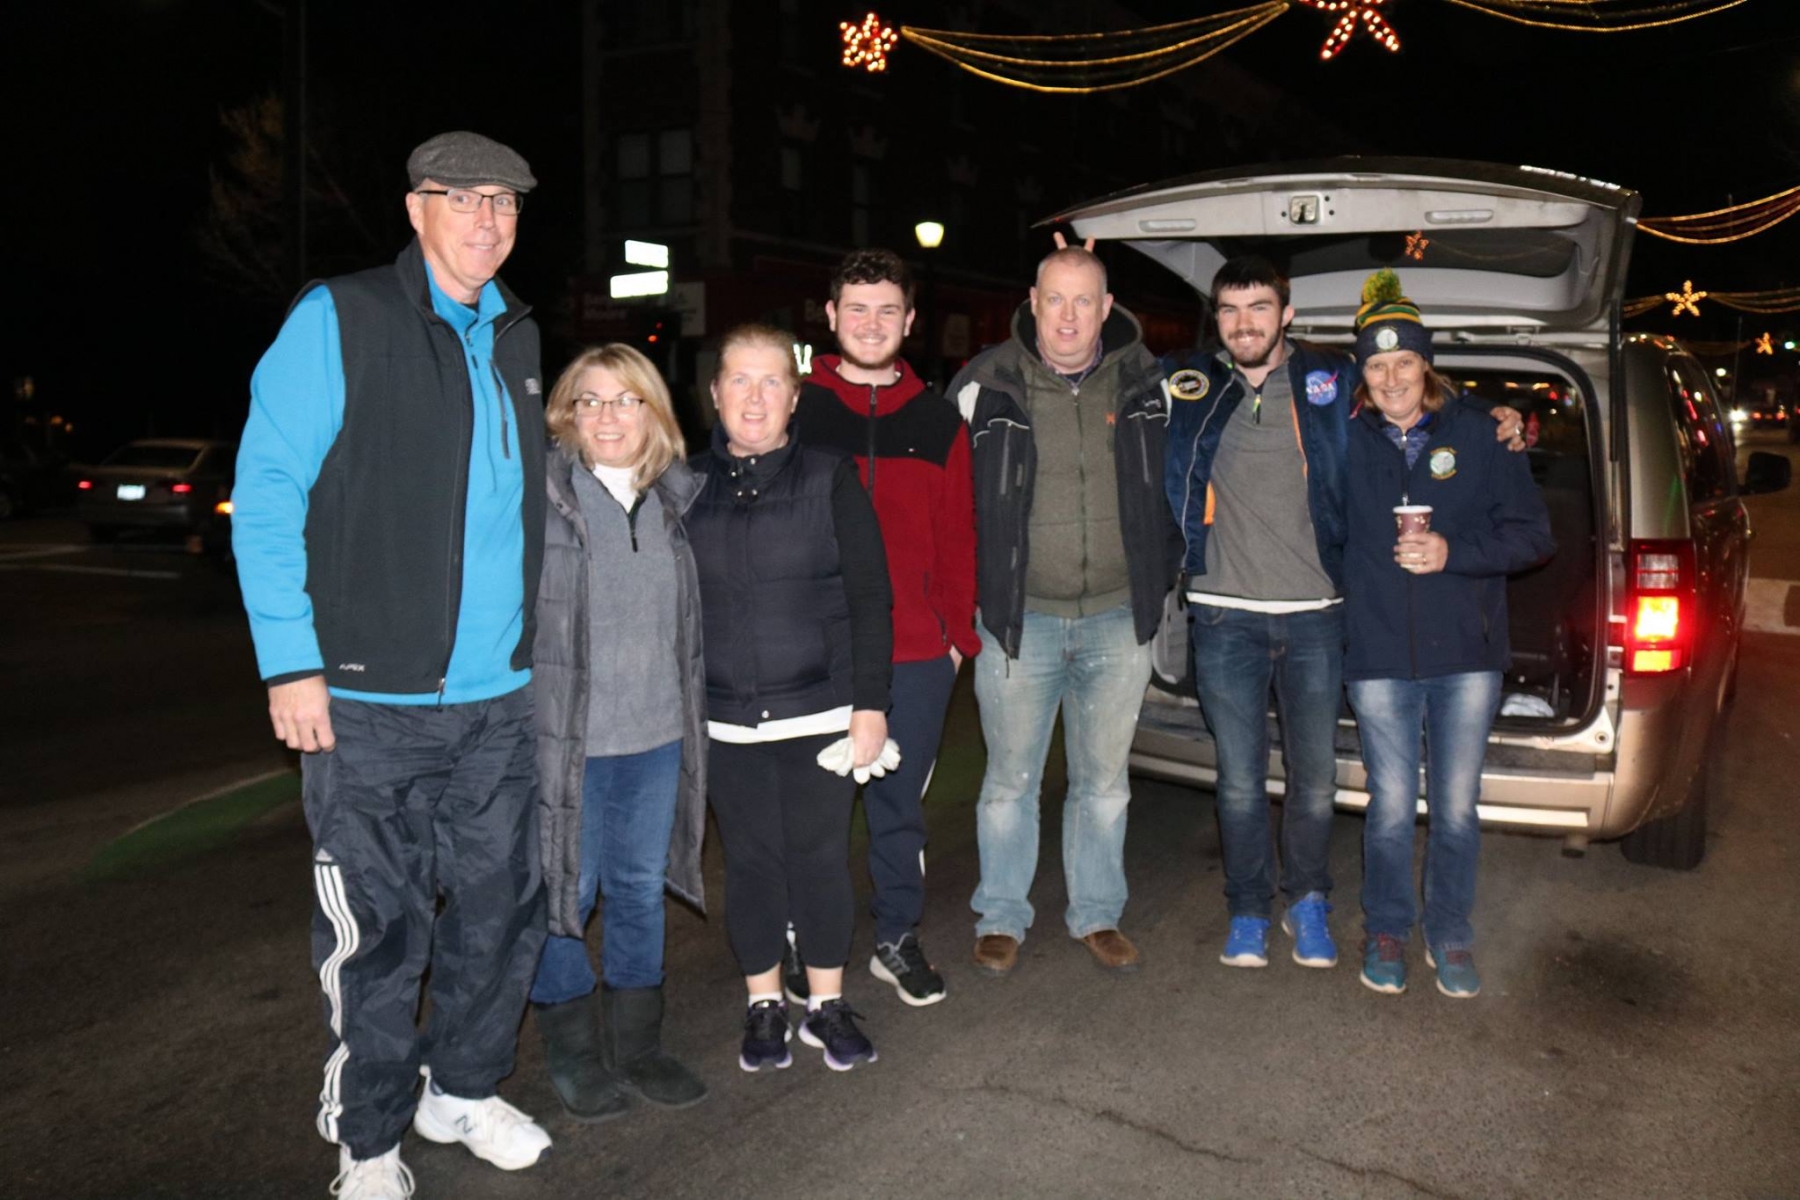 Irish Volunteers for the Homeless